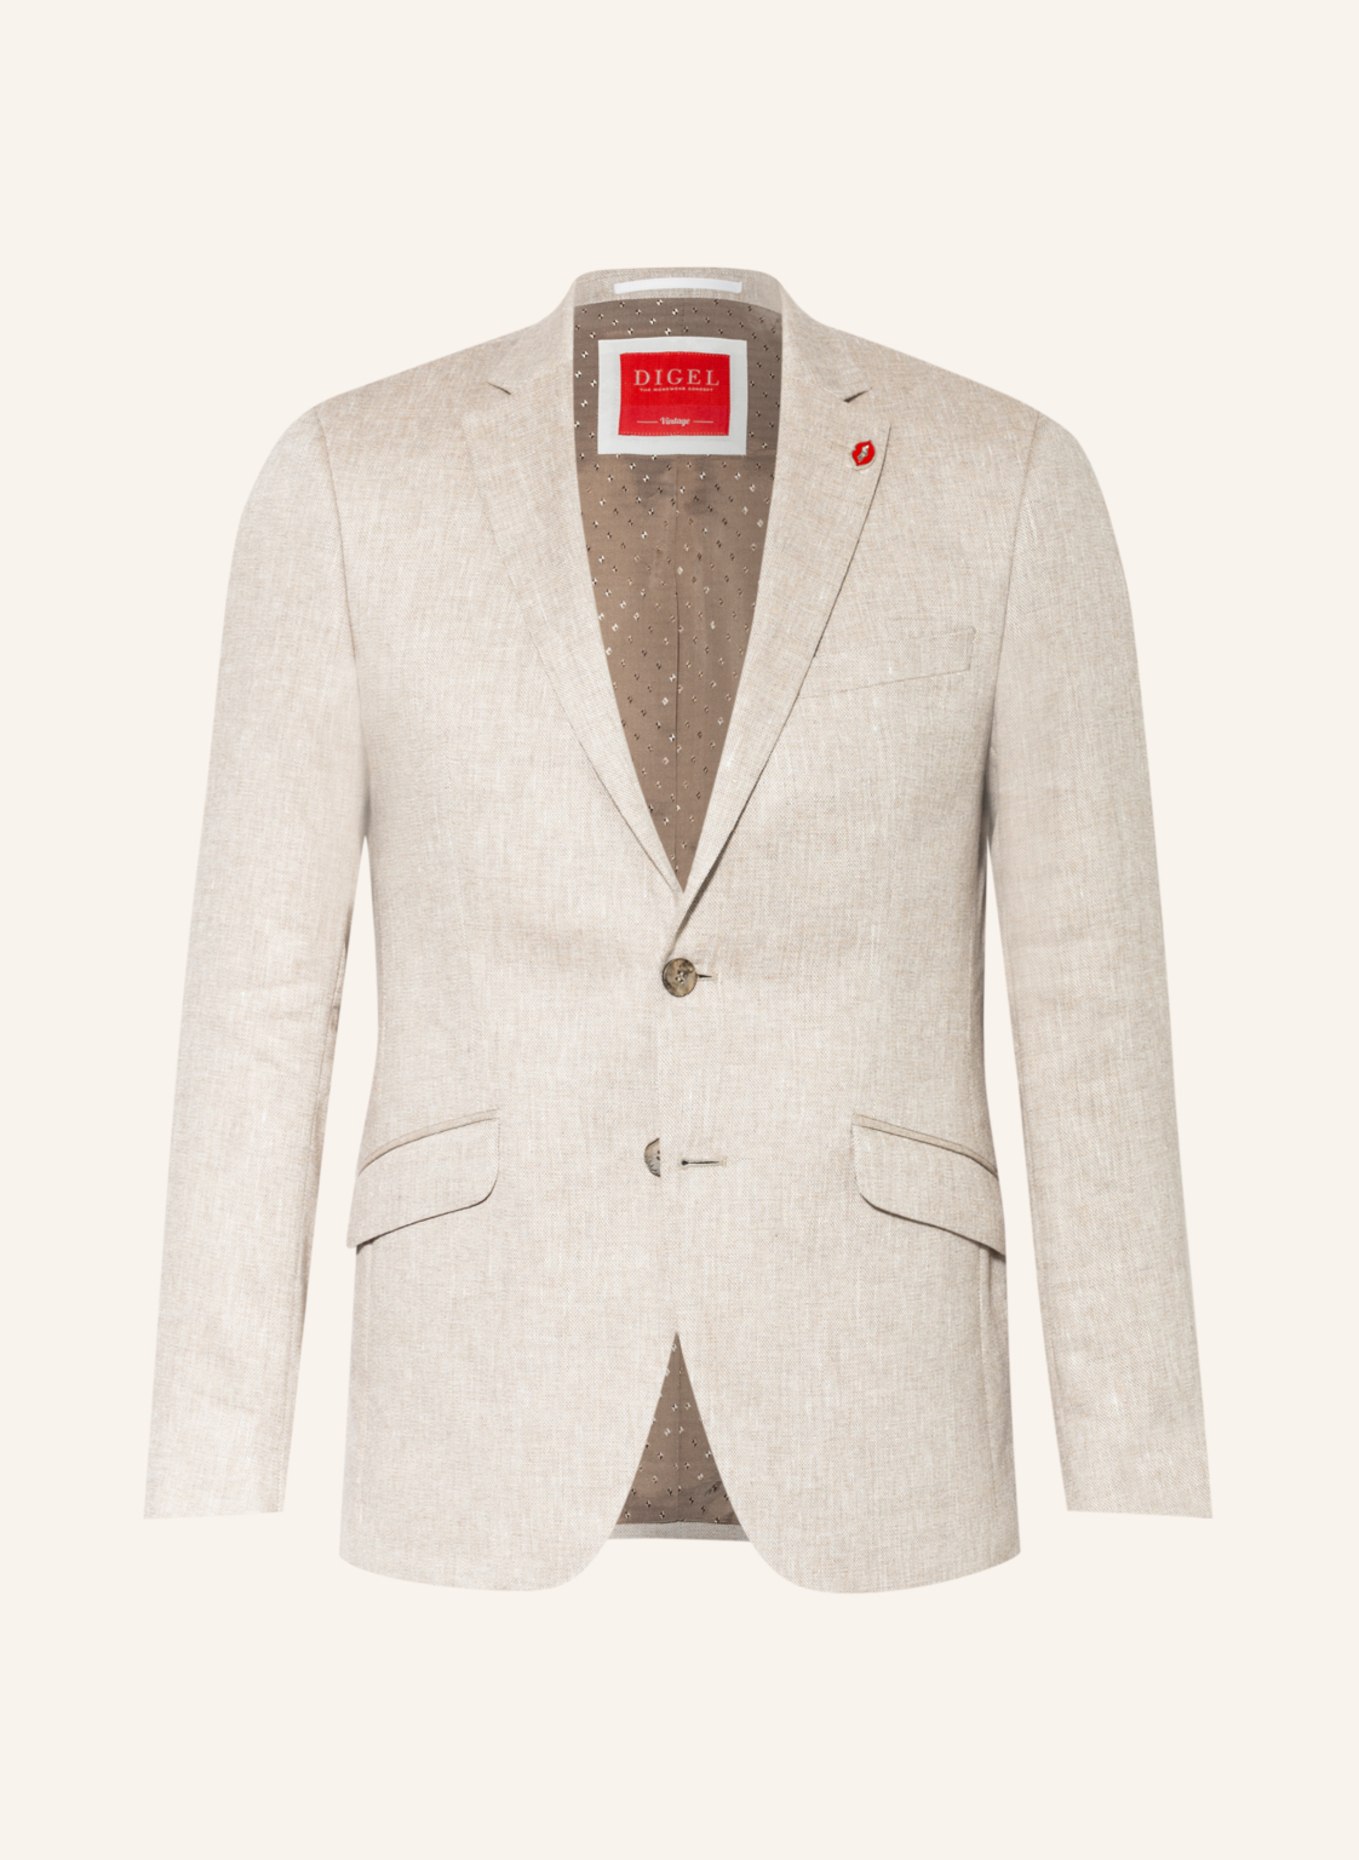 DIGEL Suit jacket ROD slim fit , Color: 74 BEIGE (Image 1)